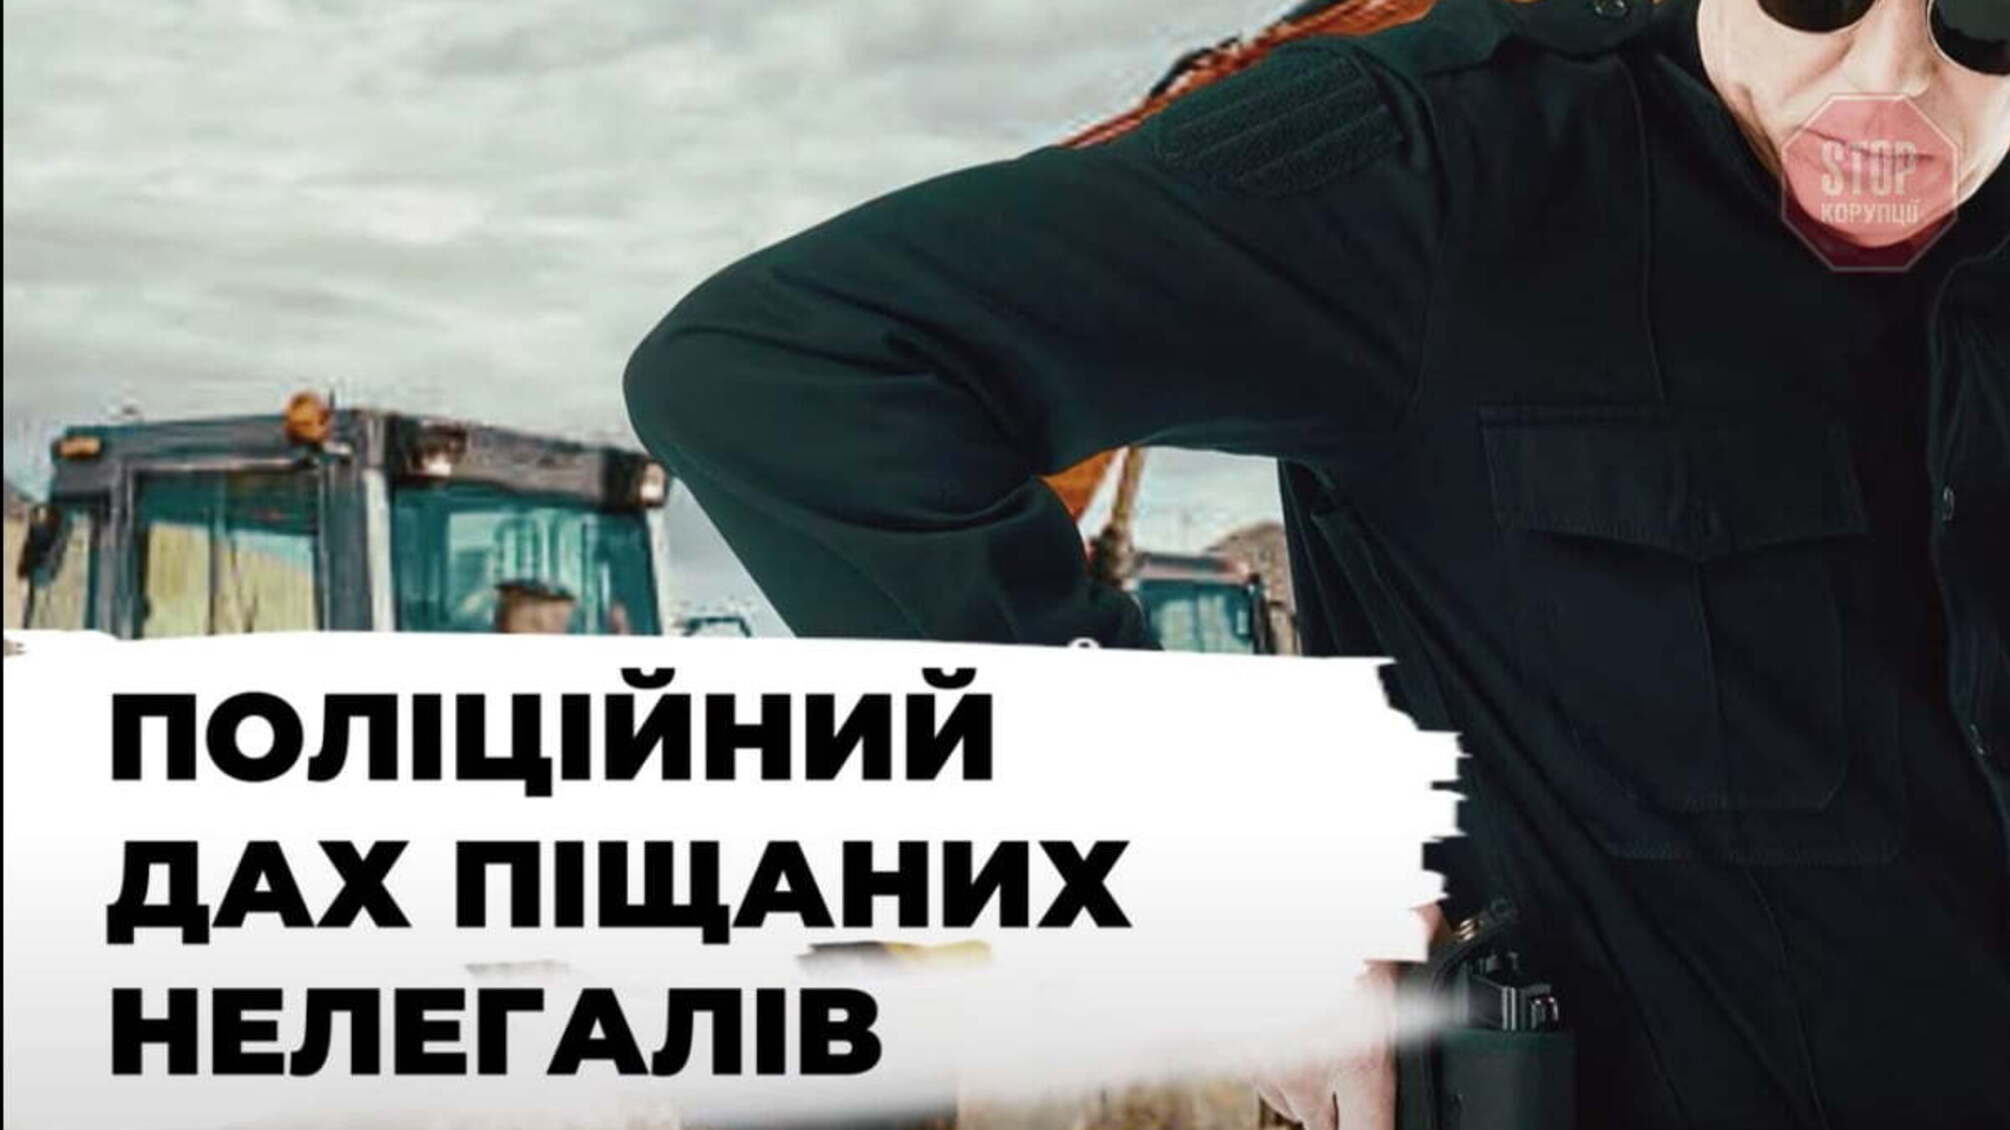 Активісти звинувачують столичну поліцію у «кришуванні» піщаних нелегалів із Голосієва